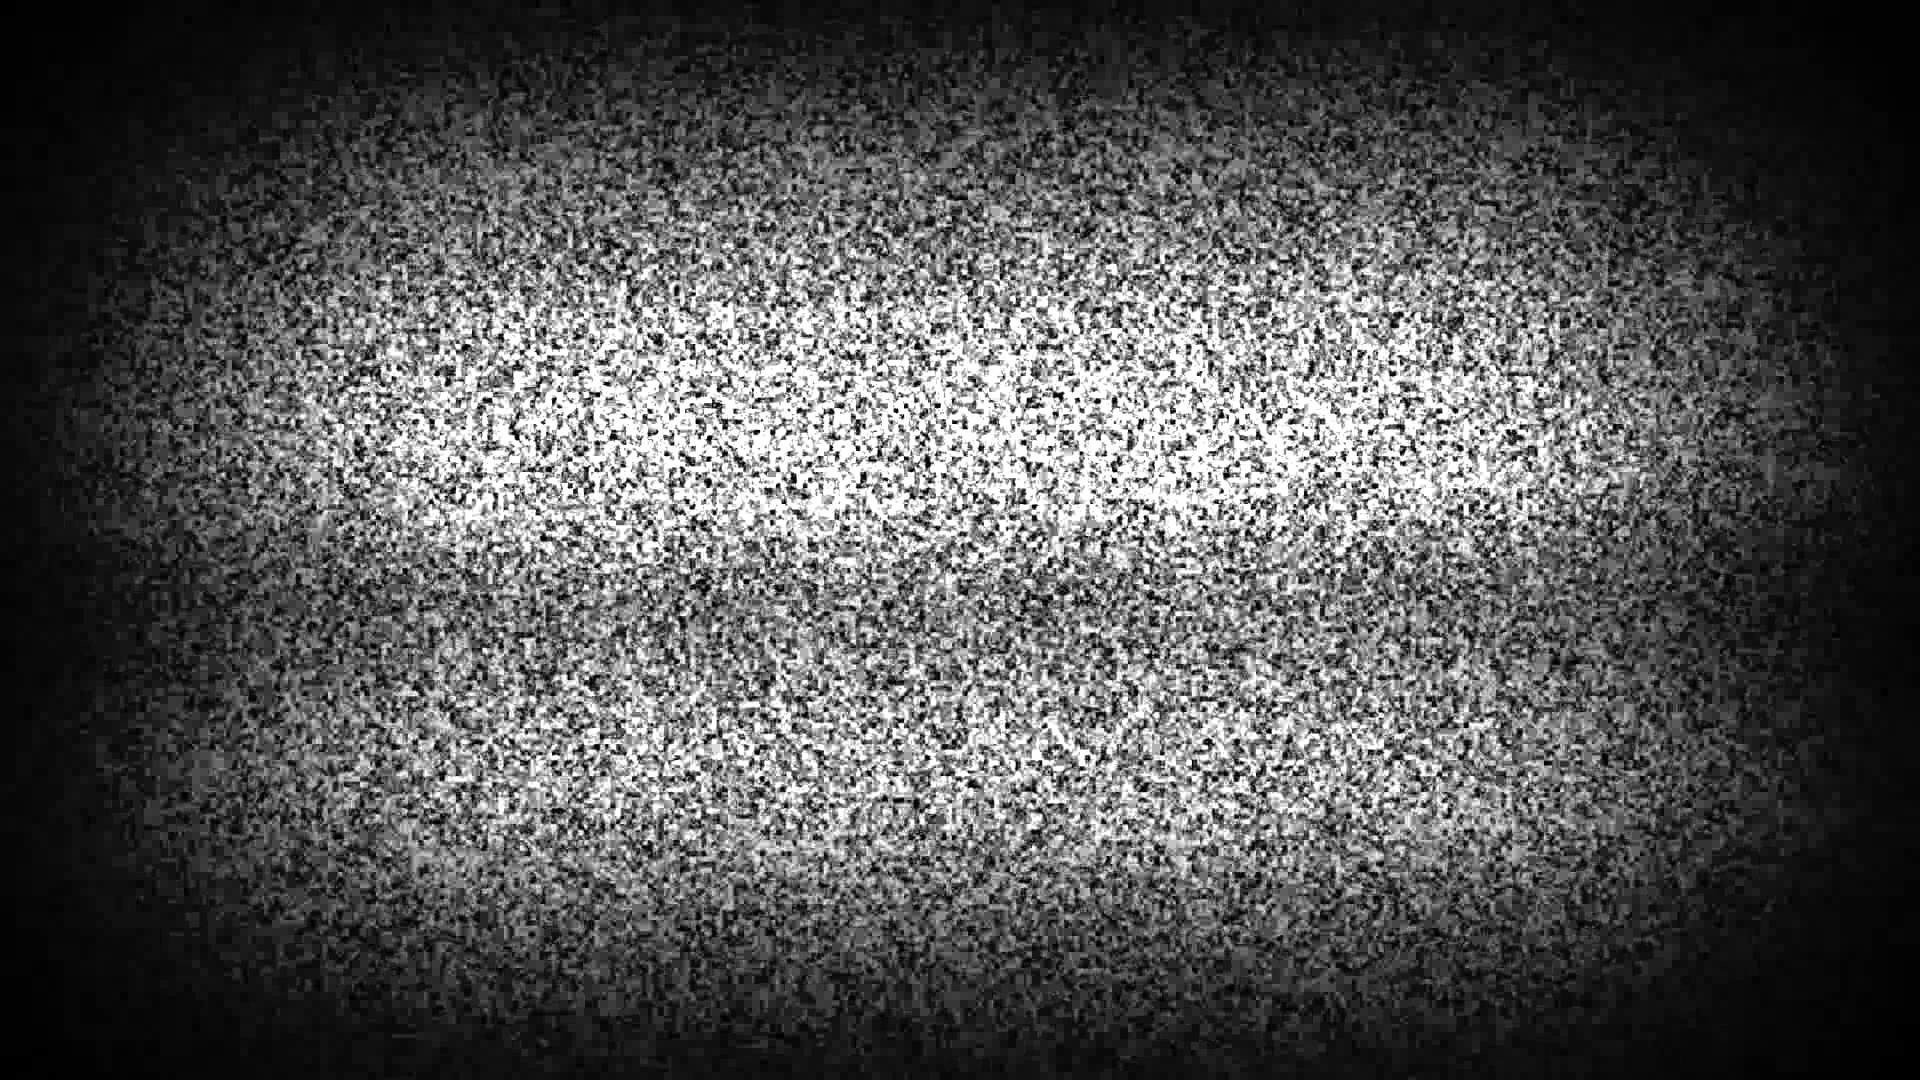 Tv effect. Белый шум помехи телевизора. Помехи на телевизоре. Помехи черно белые. Эффект телевизора.